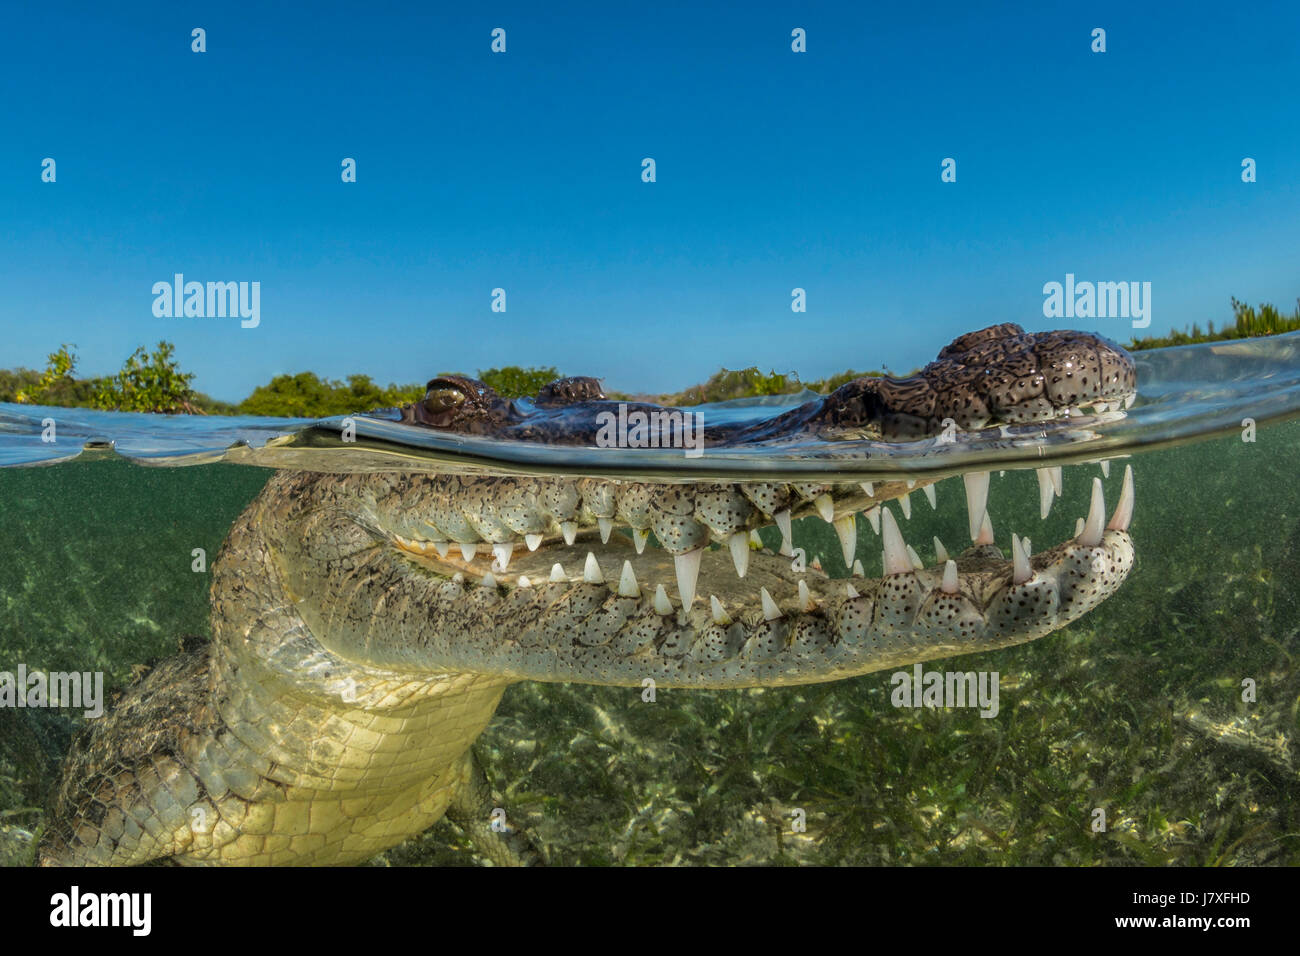 El cocodrilo americano Crocodylus acutus, Jardines de la Reina, Cuba Foto de stock